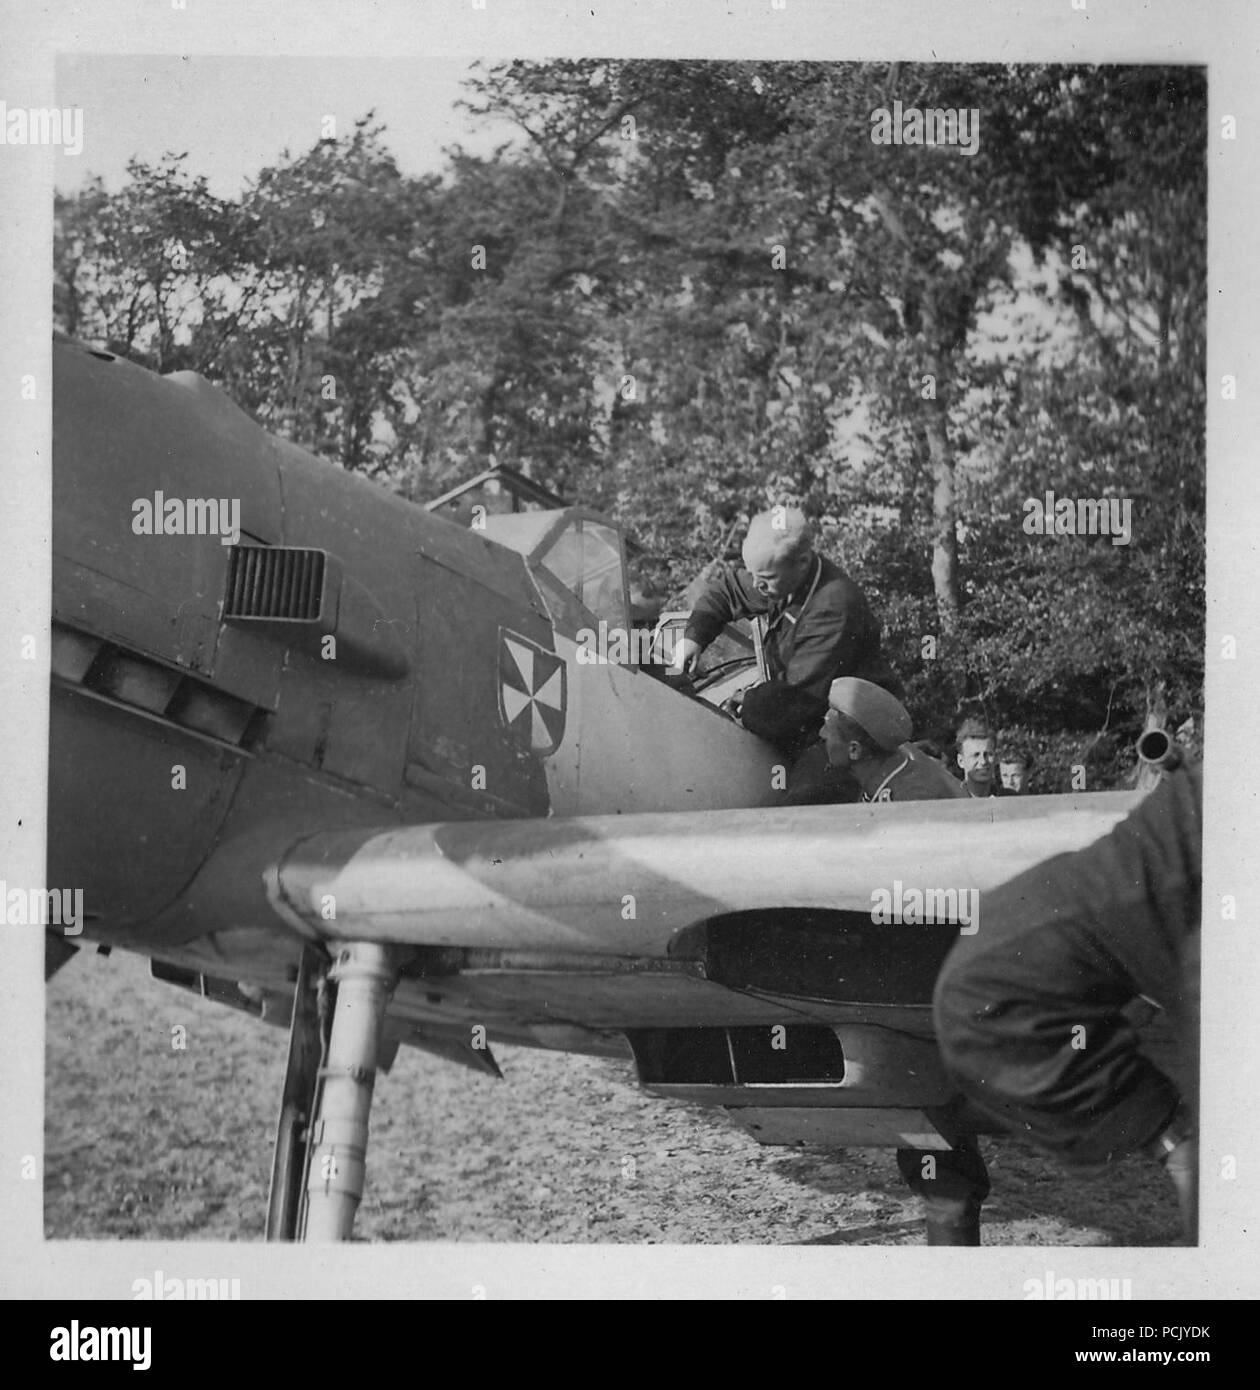 Image à partir d'un album de photos relatives à II. Gruppe, Jagdgeschwader 3 : le personnel au sol de l'aide à l'attache dans la région de Hauptmann Erich Woitke, Staffelkapitän du 6./JG3 et agissant de Gruppenkommandeur II./JG3 à partir du 1er octobre 1940 jusqu'au 23 novembre 1940, alors qu'il se prépare à décoller dans son Messerschmitt Bf 109E de Wierre au bois à l'été 1940. Banque D'Images